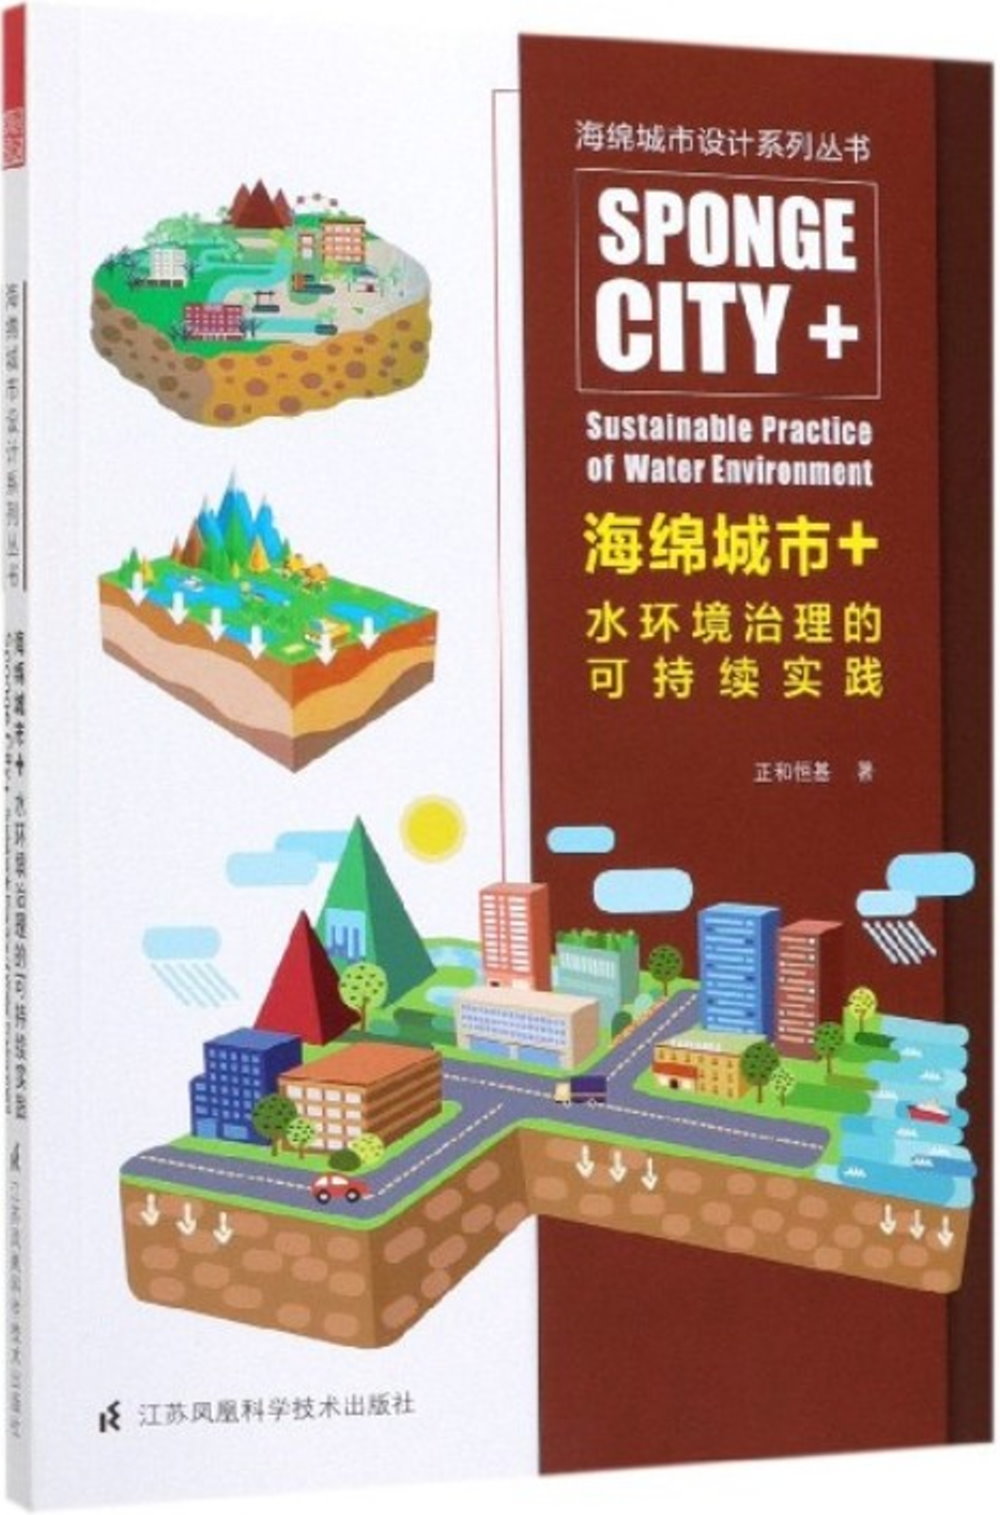 海綿城市+水環境治理的可持續實踐